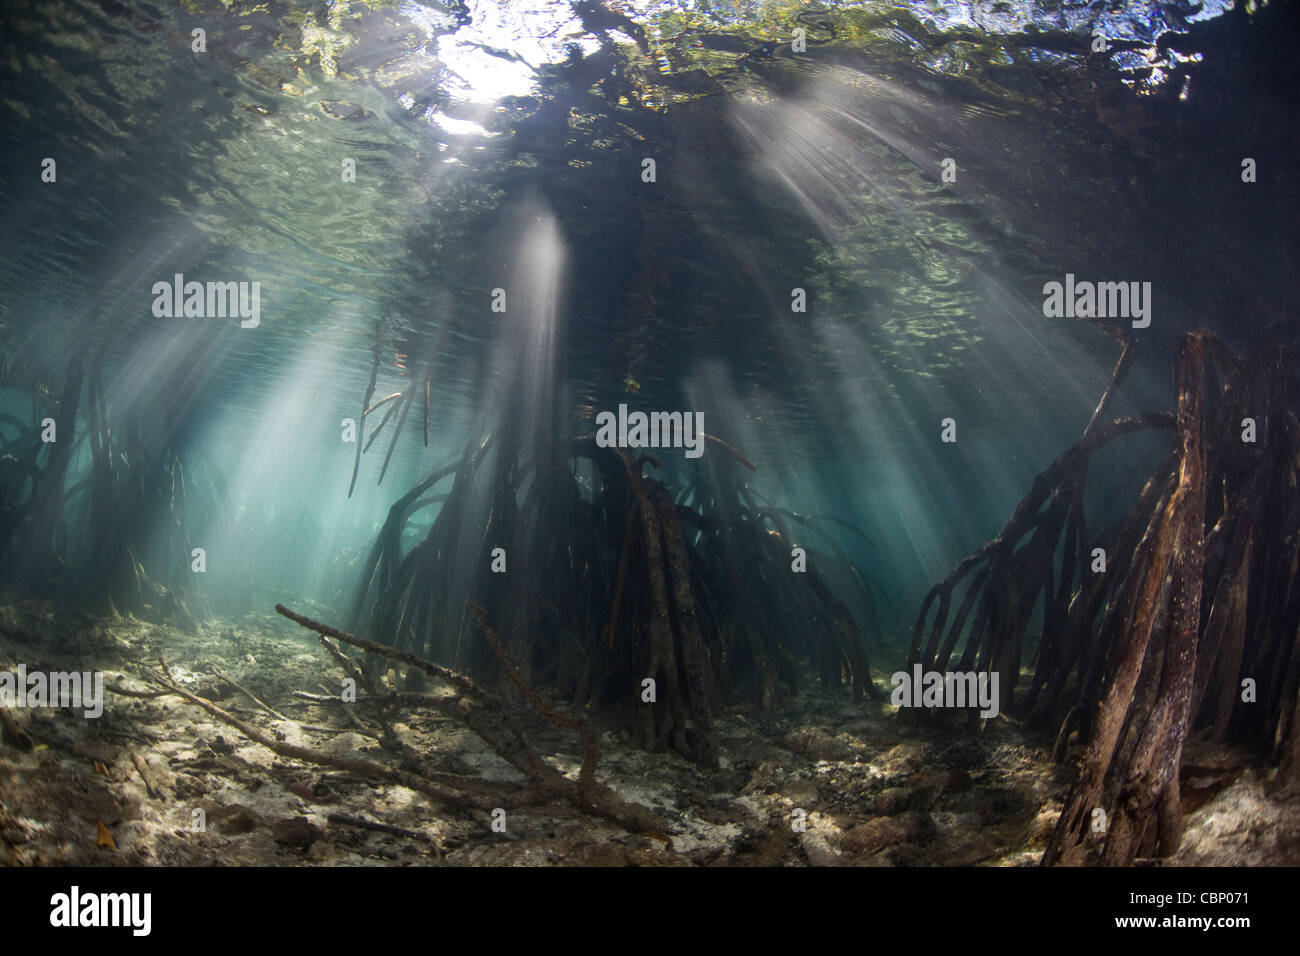 Fasci di luce solare che penetrano le acque di una foresta di mangrovie. Il puntello radici vivaio fornire habitat per pesci e invertebrati. Foto Stock